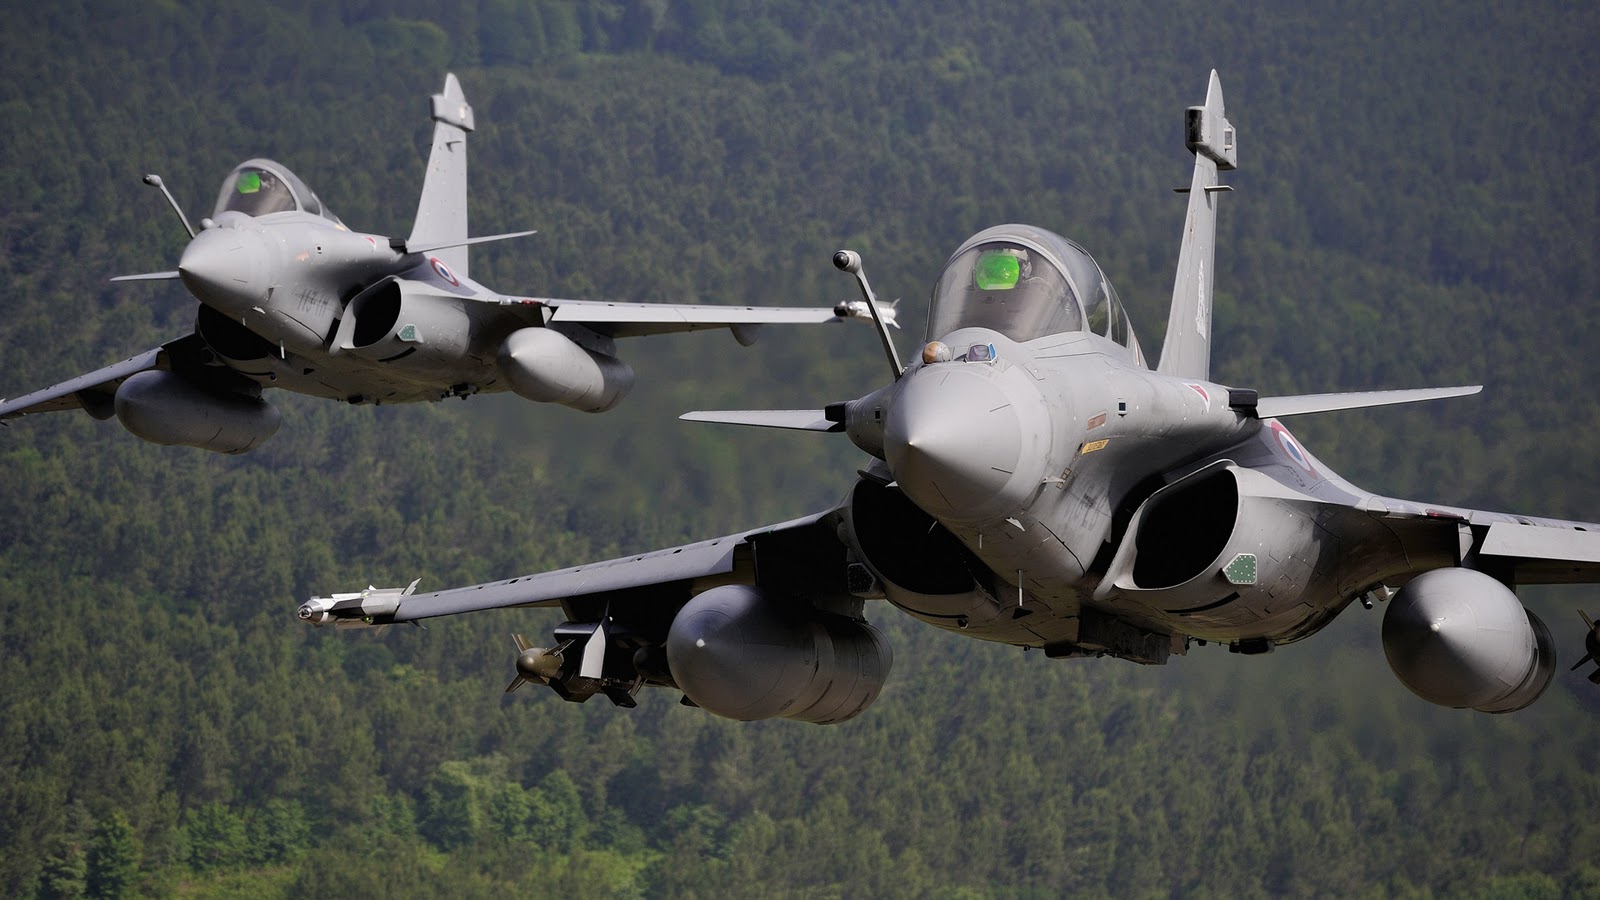 Máy bay chiến đấu Rafale của Pháp đã tham gia thực hiện một đợt không kích quy mô lớn nhằm vào IS tại Syria